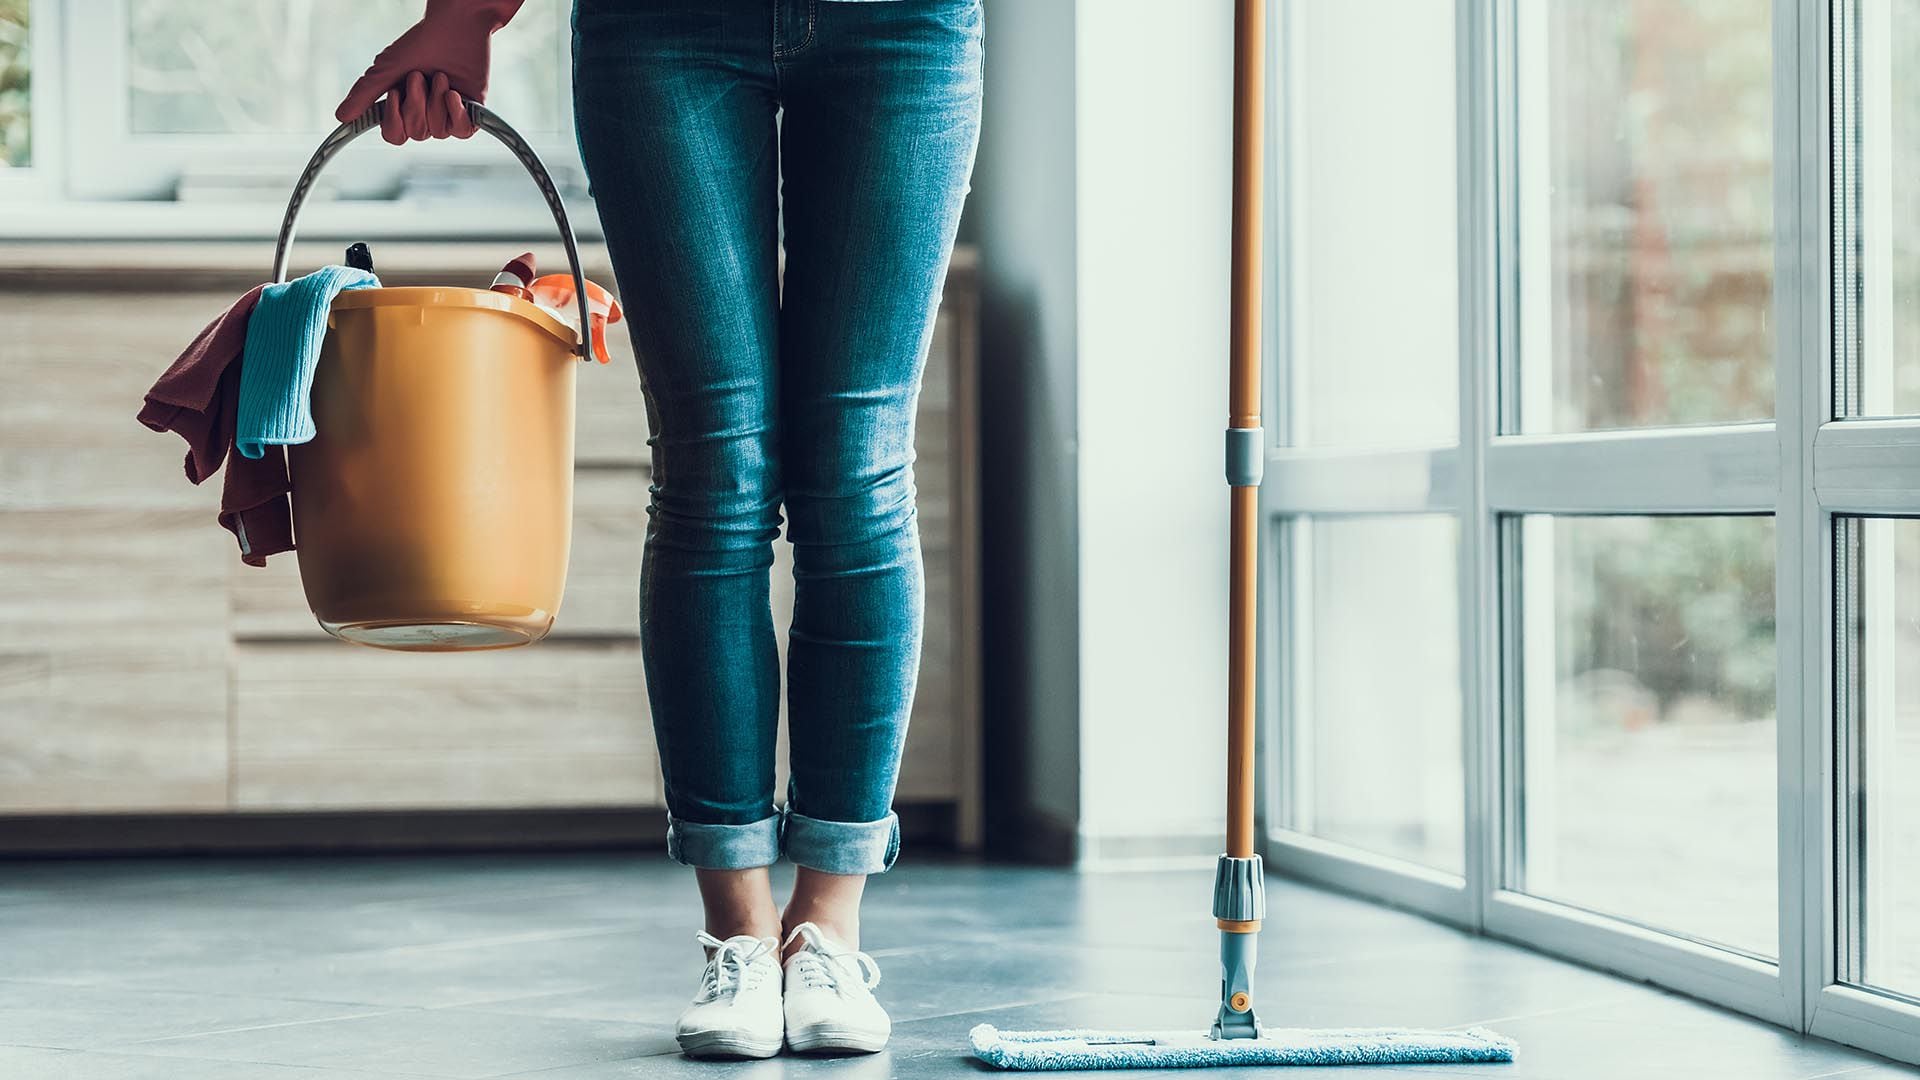 El mes próximo se aplica un 6% de ajuste a los salarios de los trabajadores de casas particulares (Shutterstock)